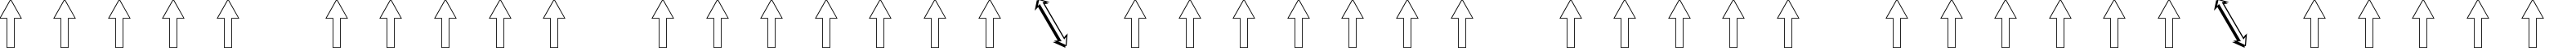 Пример написания шрифтом Arrows2 текста на белорусском